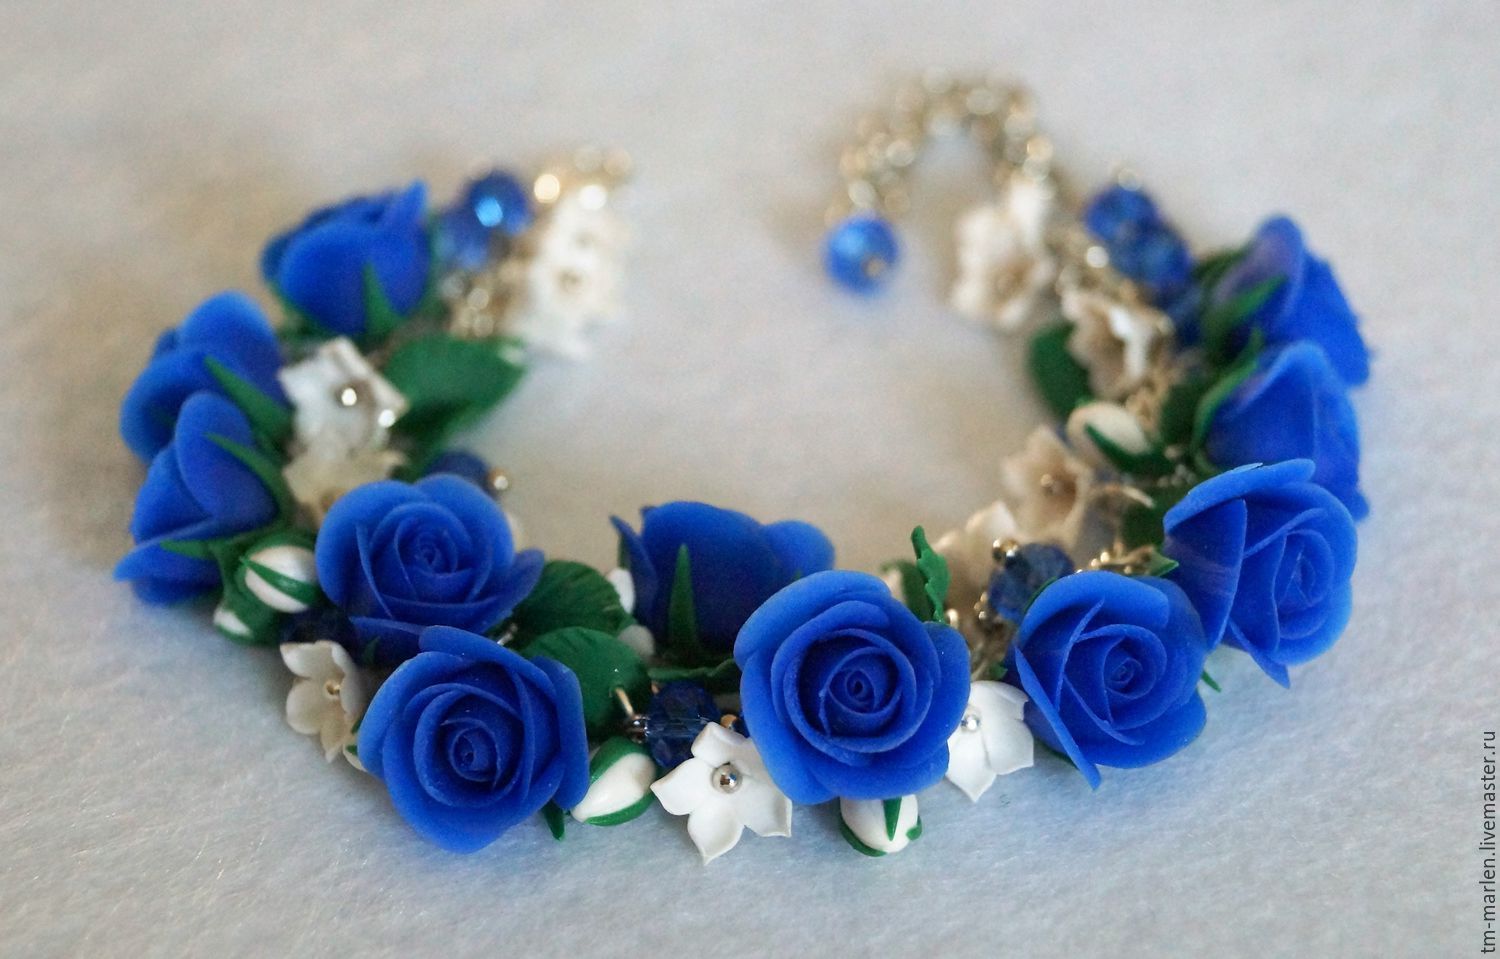 Браслет с синими розами из полимерной глины